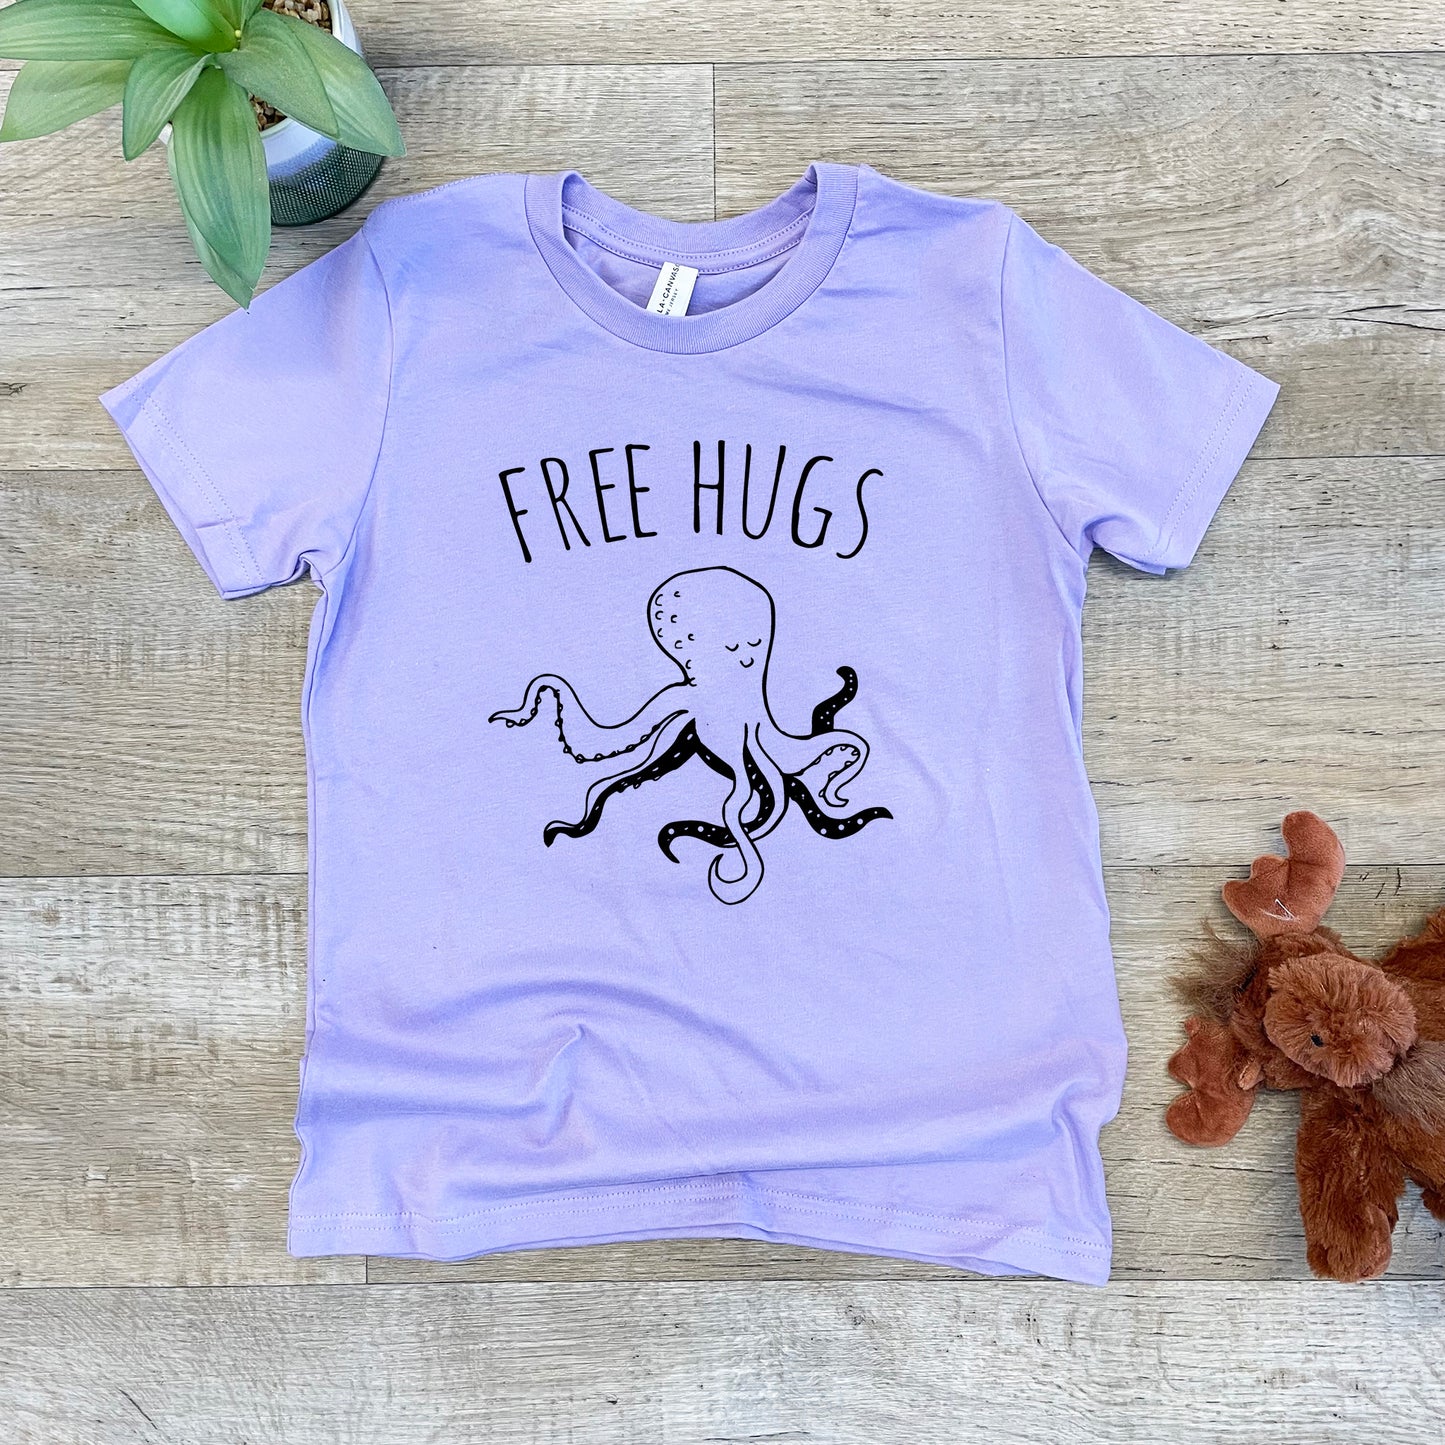 Free Hugs (Kids) - Kid's Tee - Columbia Blue or Lavender